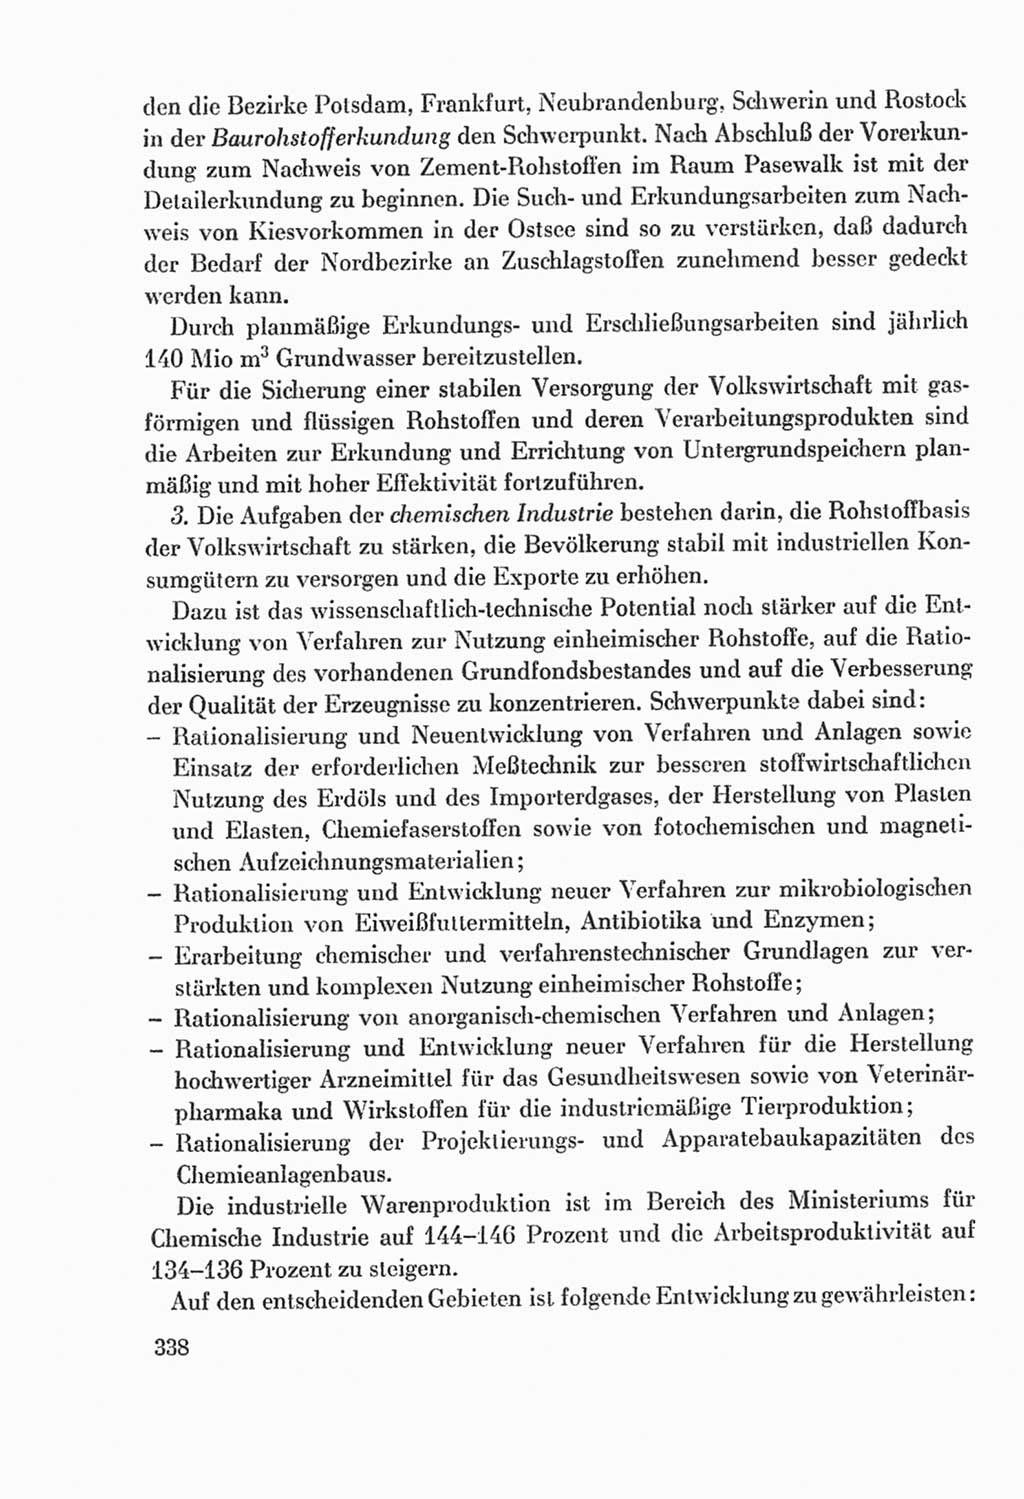 Protokoll der Verhandlungen des Ⅸ. Parteitages der Sozialistischen Einheitspartei Deutschlands (SED) [Deutsche Demokratische Republik (DDR)] 1976, Band 2, Seite 338 (Prot. Verh. Ⅸ. PT SED DDR 1976, Bd. 2, S. 338)